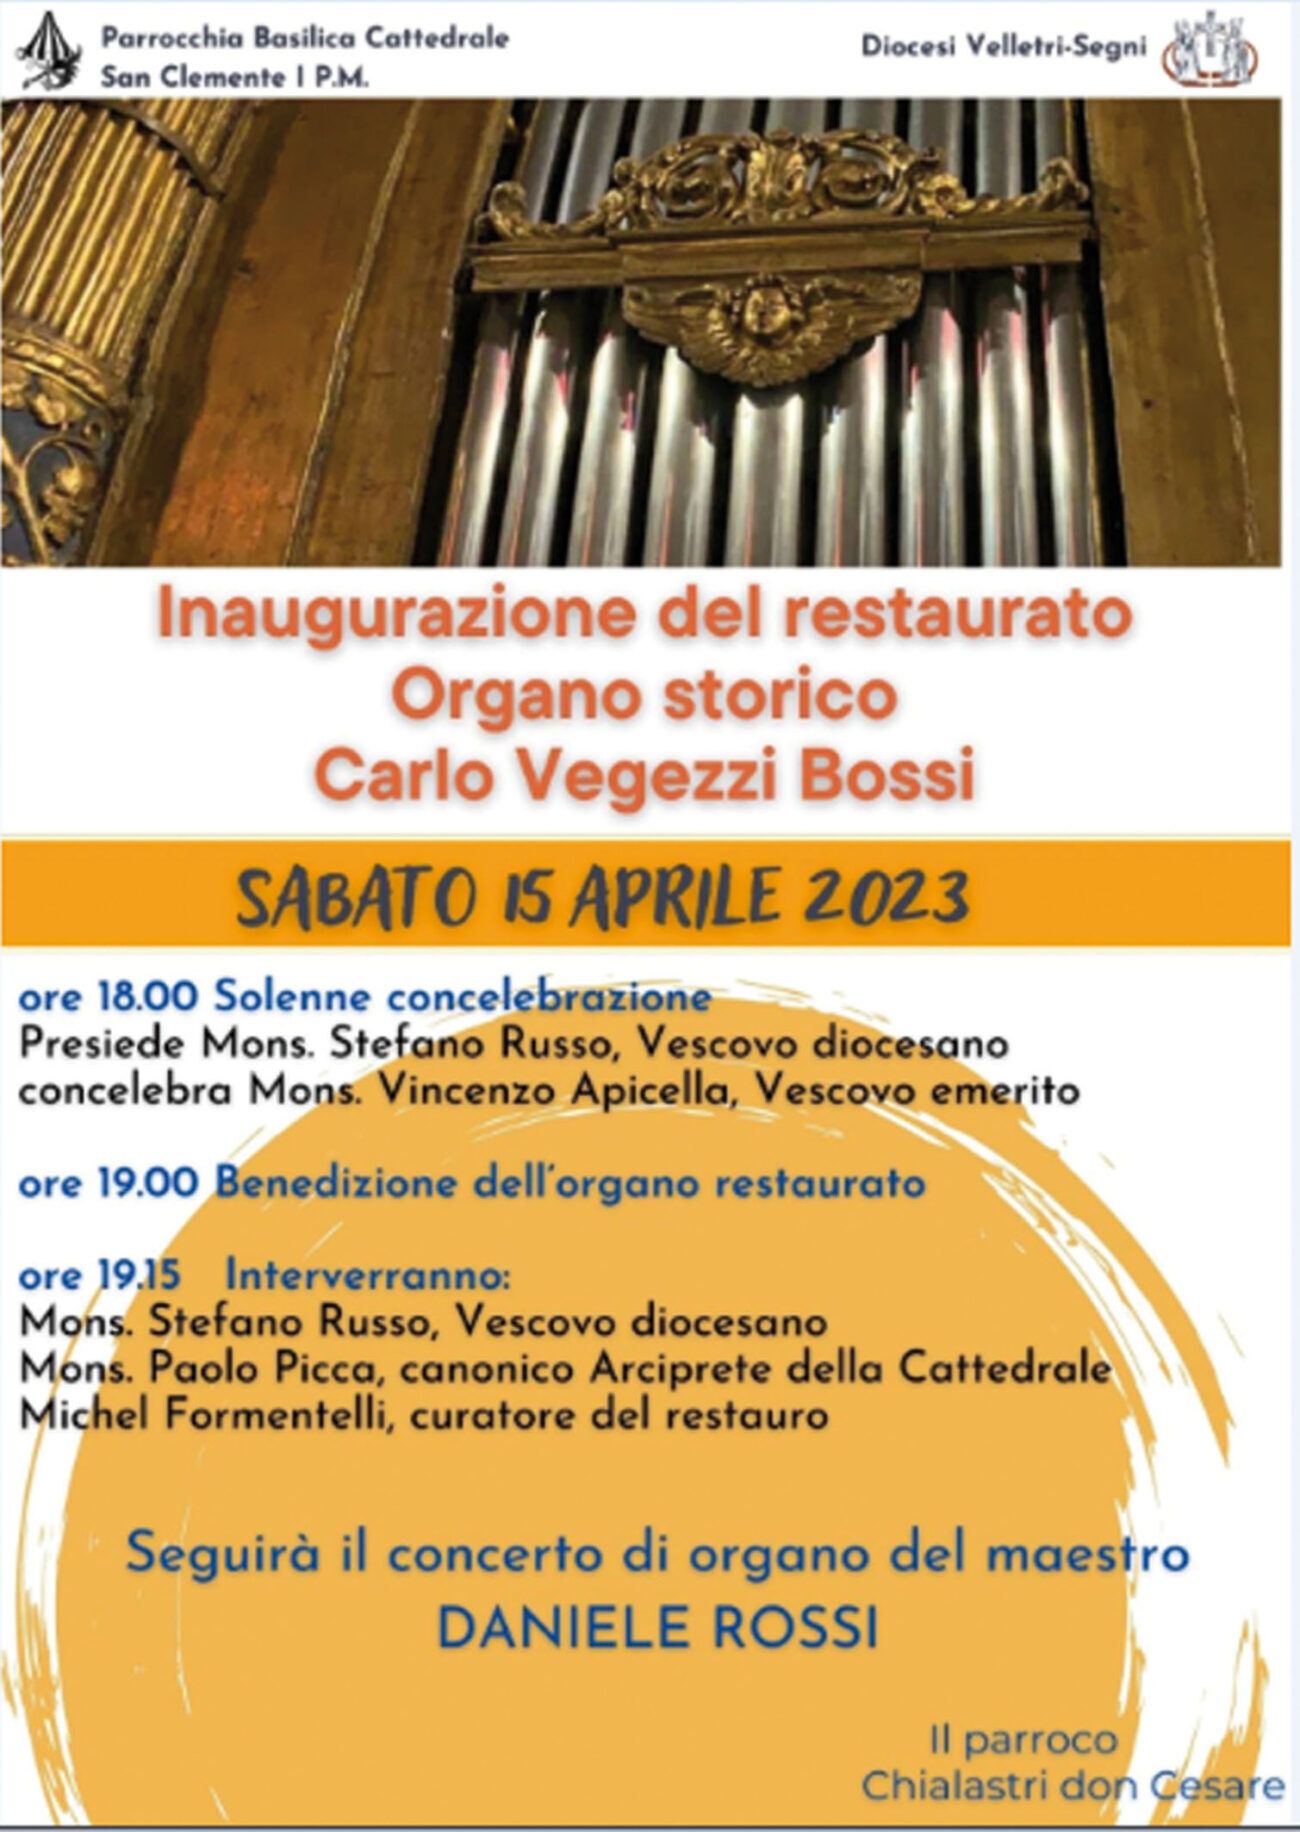 Locandina dell'inaugurazione dell'organo a canne